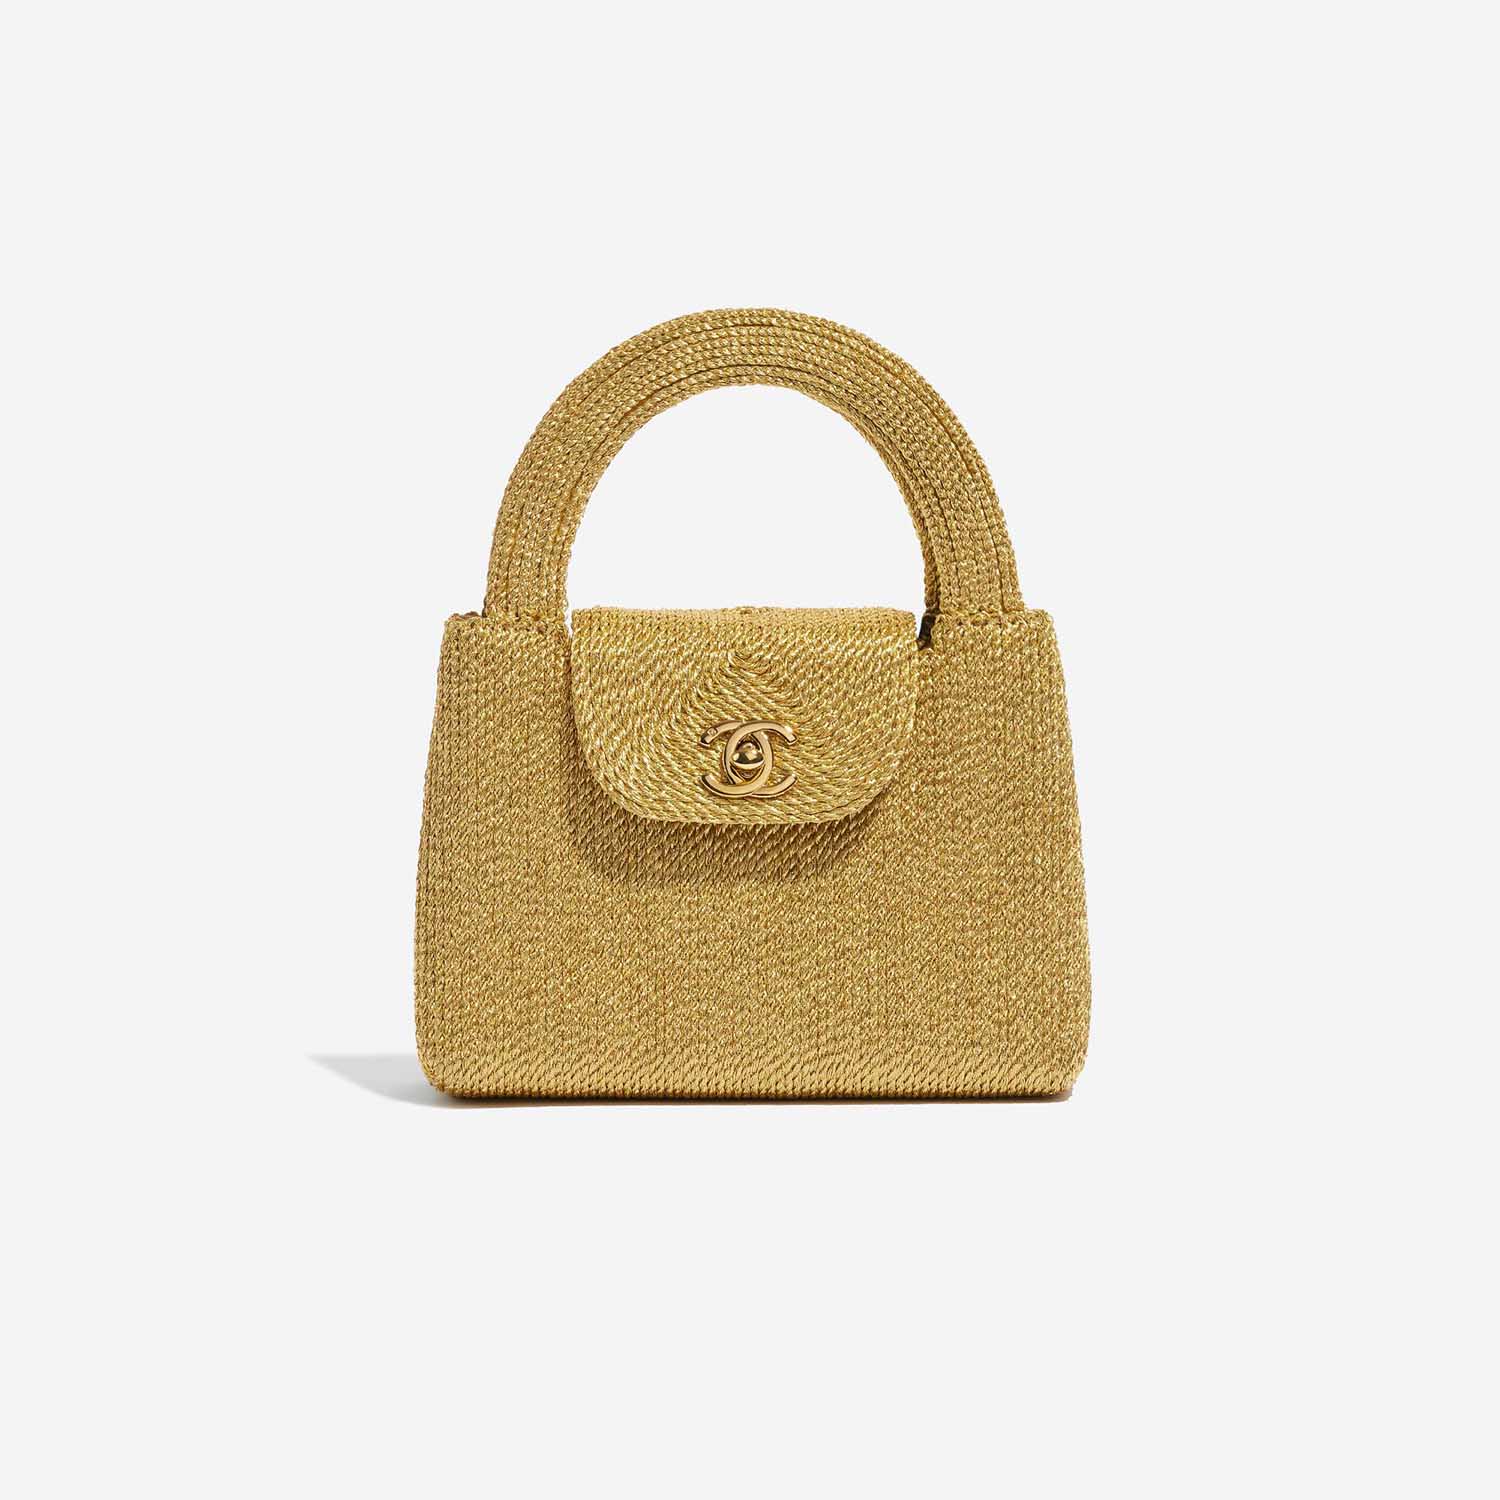 Sac Chanel d'occasion Timeless Poignée Petite Soie Corde Or Devant | Vendez votre sac de créateur sur Saclab.com